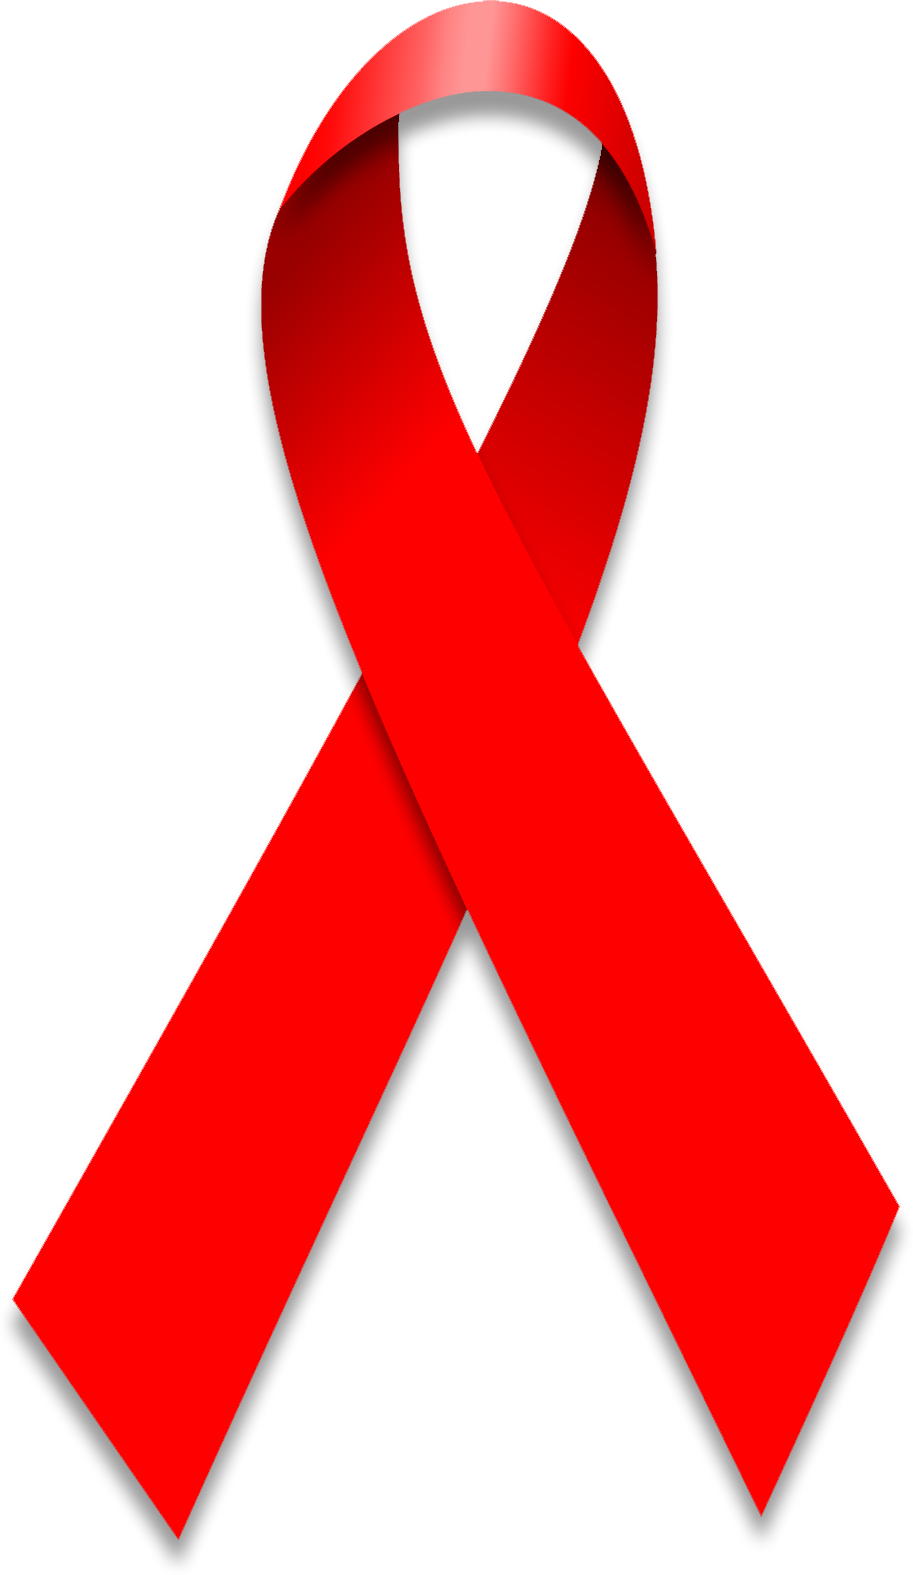 World_Aids_Day_Ribbon